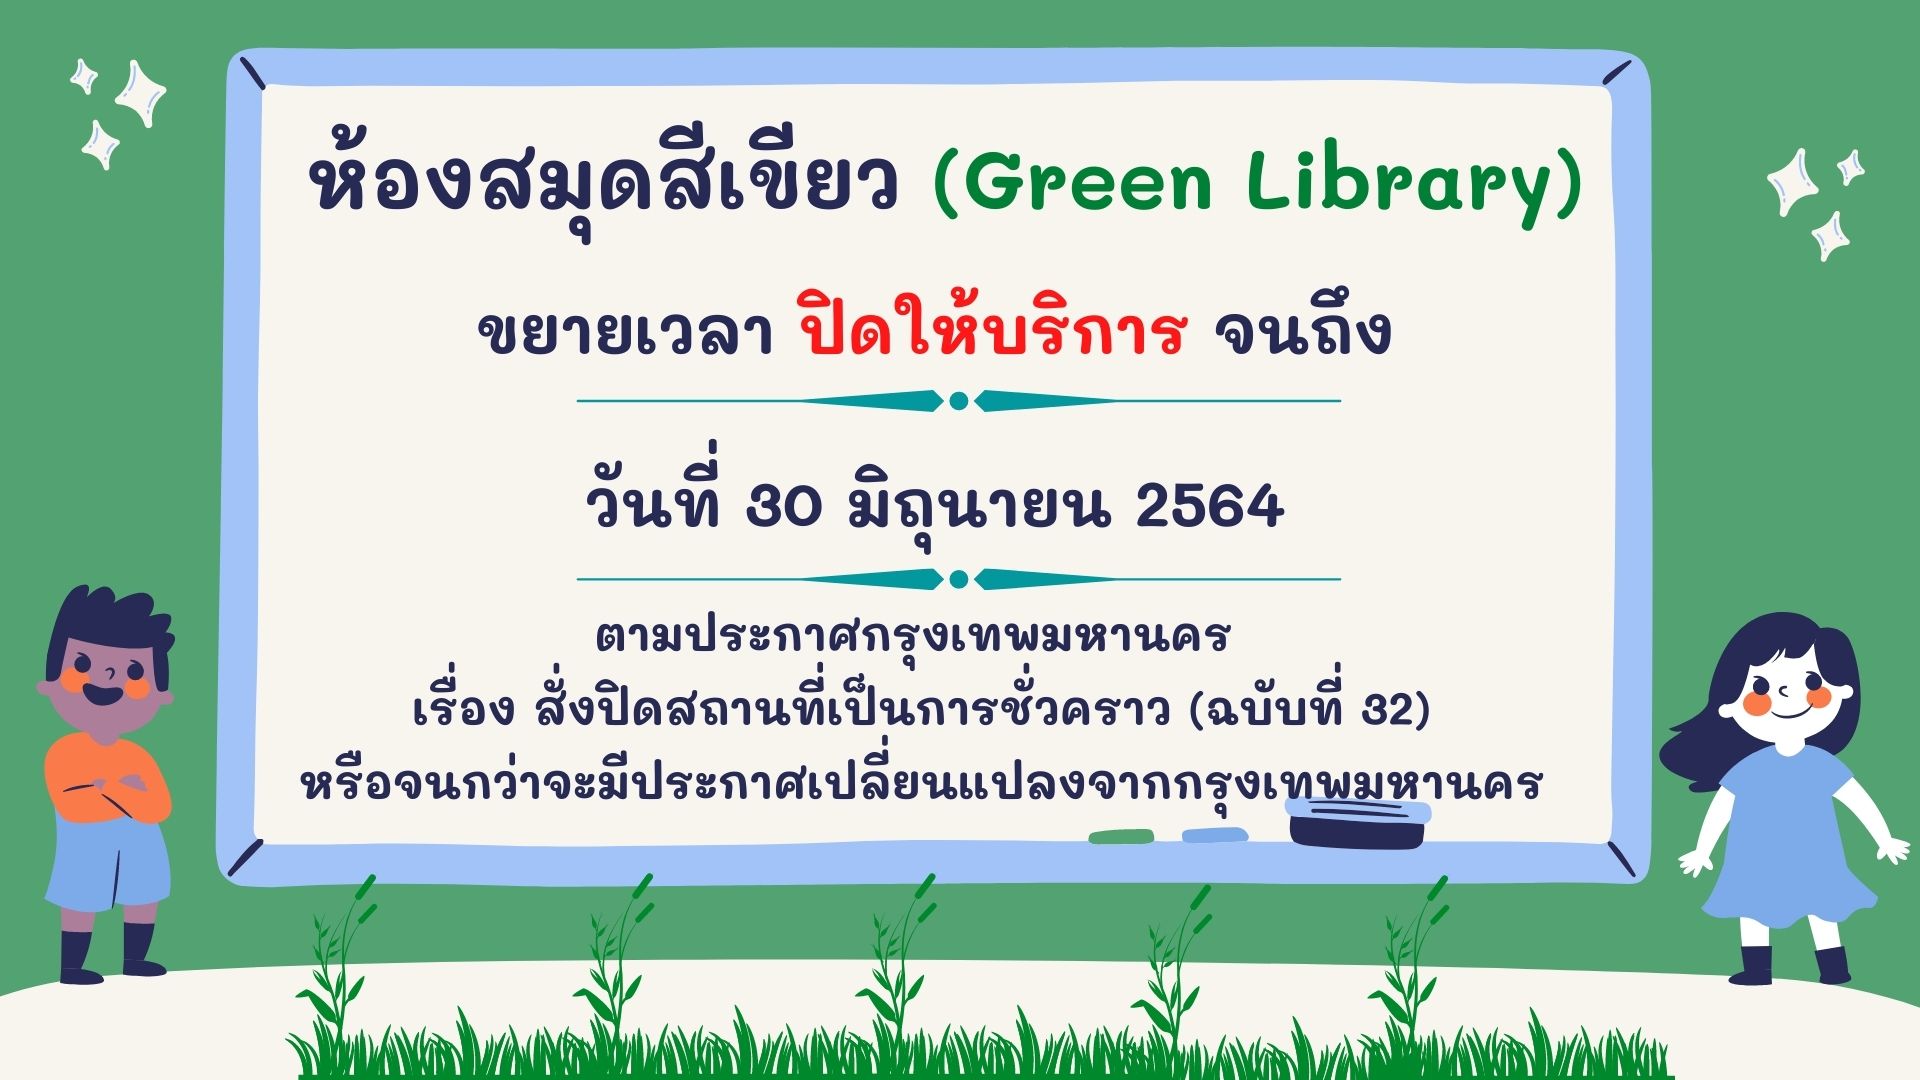 ประกาศห้องสมุดสีเขียว ขยายเวลาการปิดให้บริการจนถึง วันที่ 30 มิถุนายน 2564